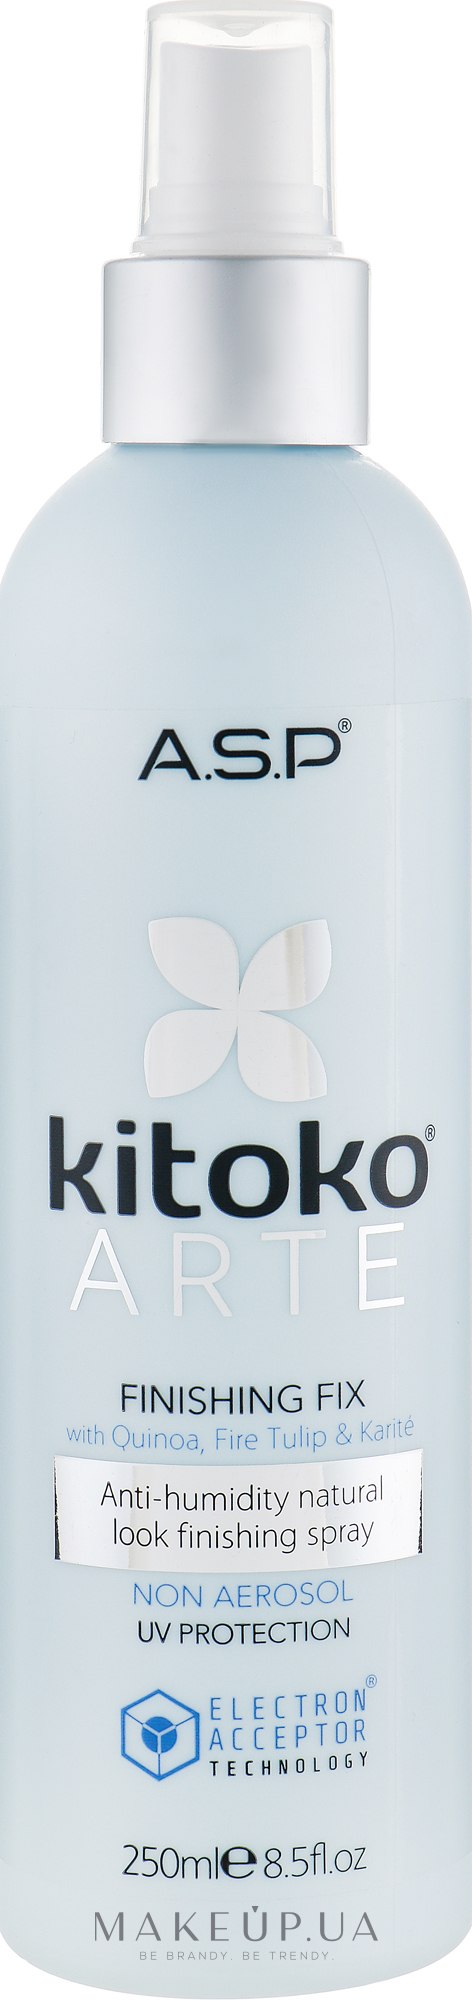 Неаэрозольный лак для волос - ASP Kitoko Arte Finishing Fix — фото 250ml